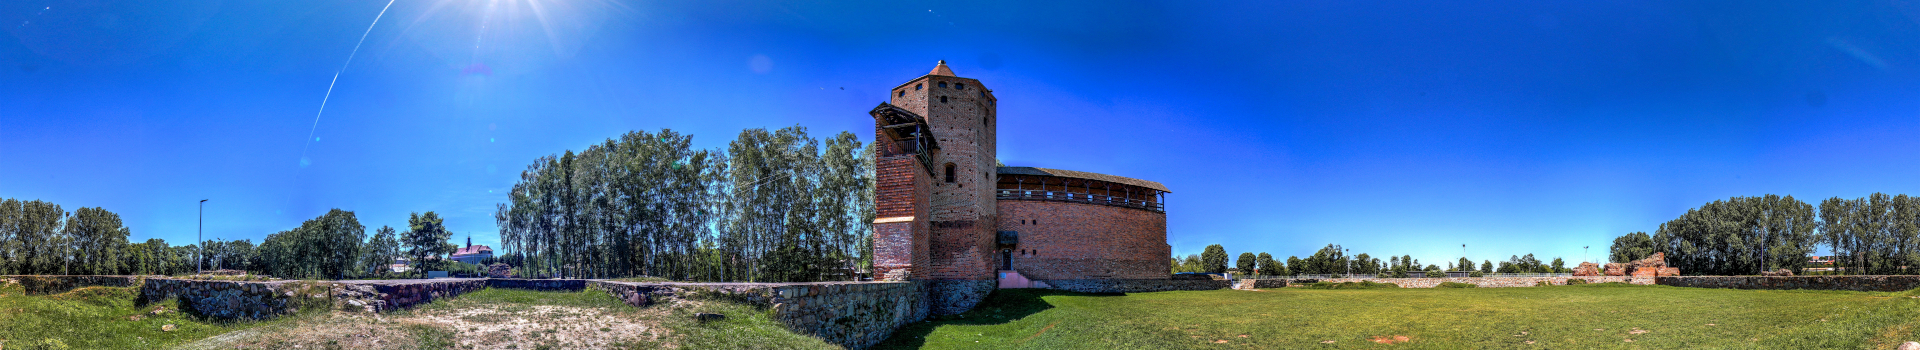 Zamek Książąt Mazowieckich